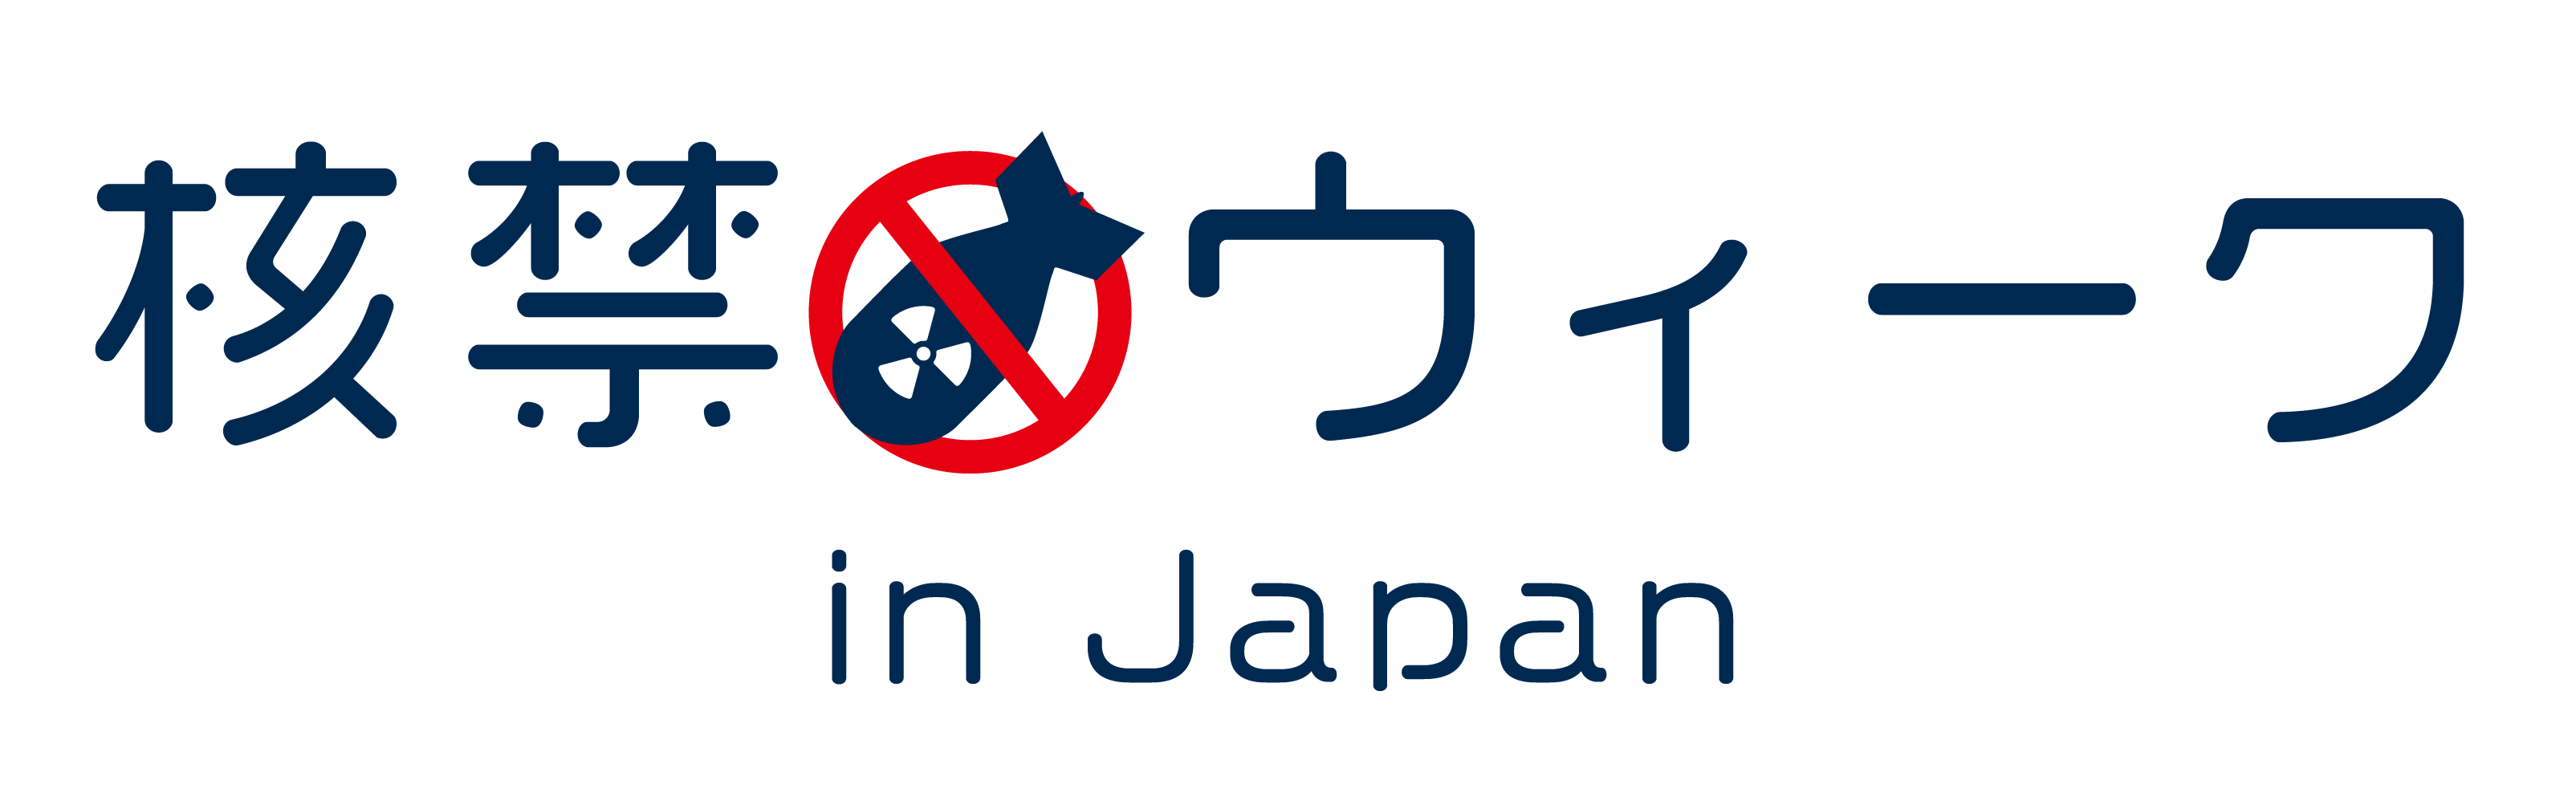 核禁ウィーク in Japan